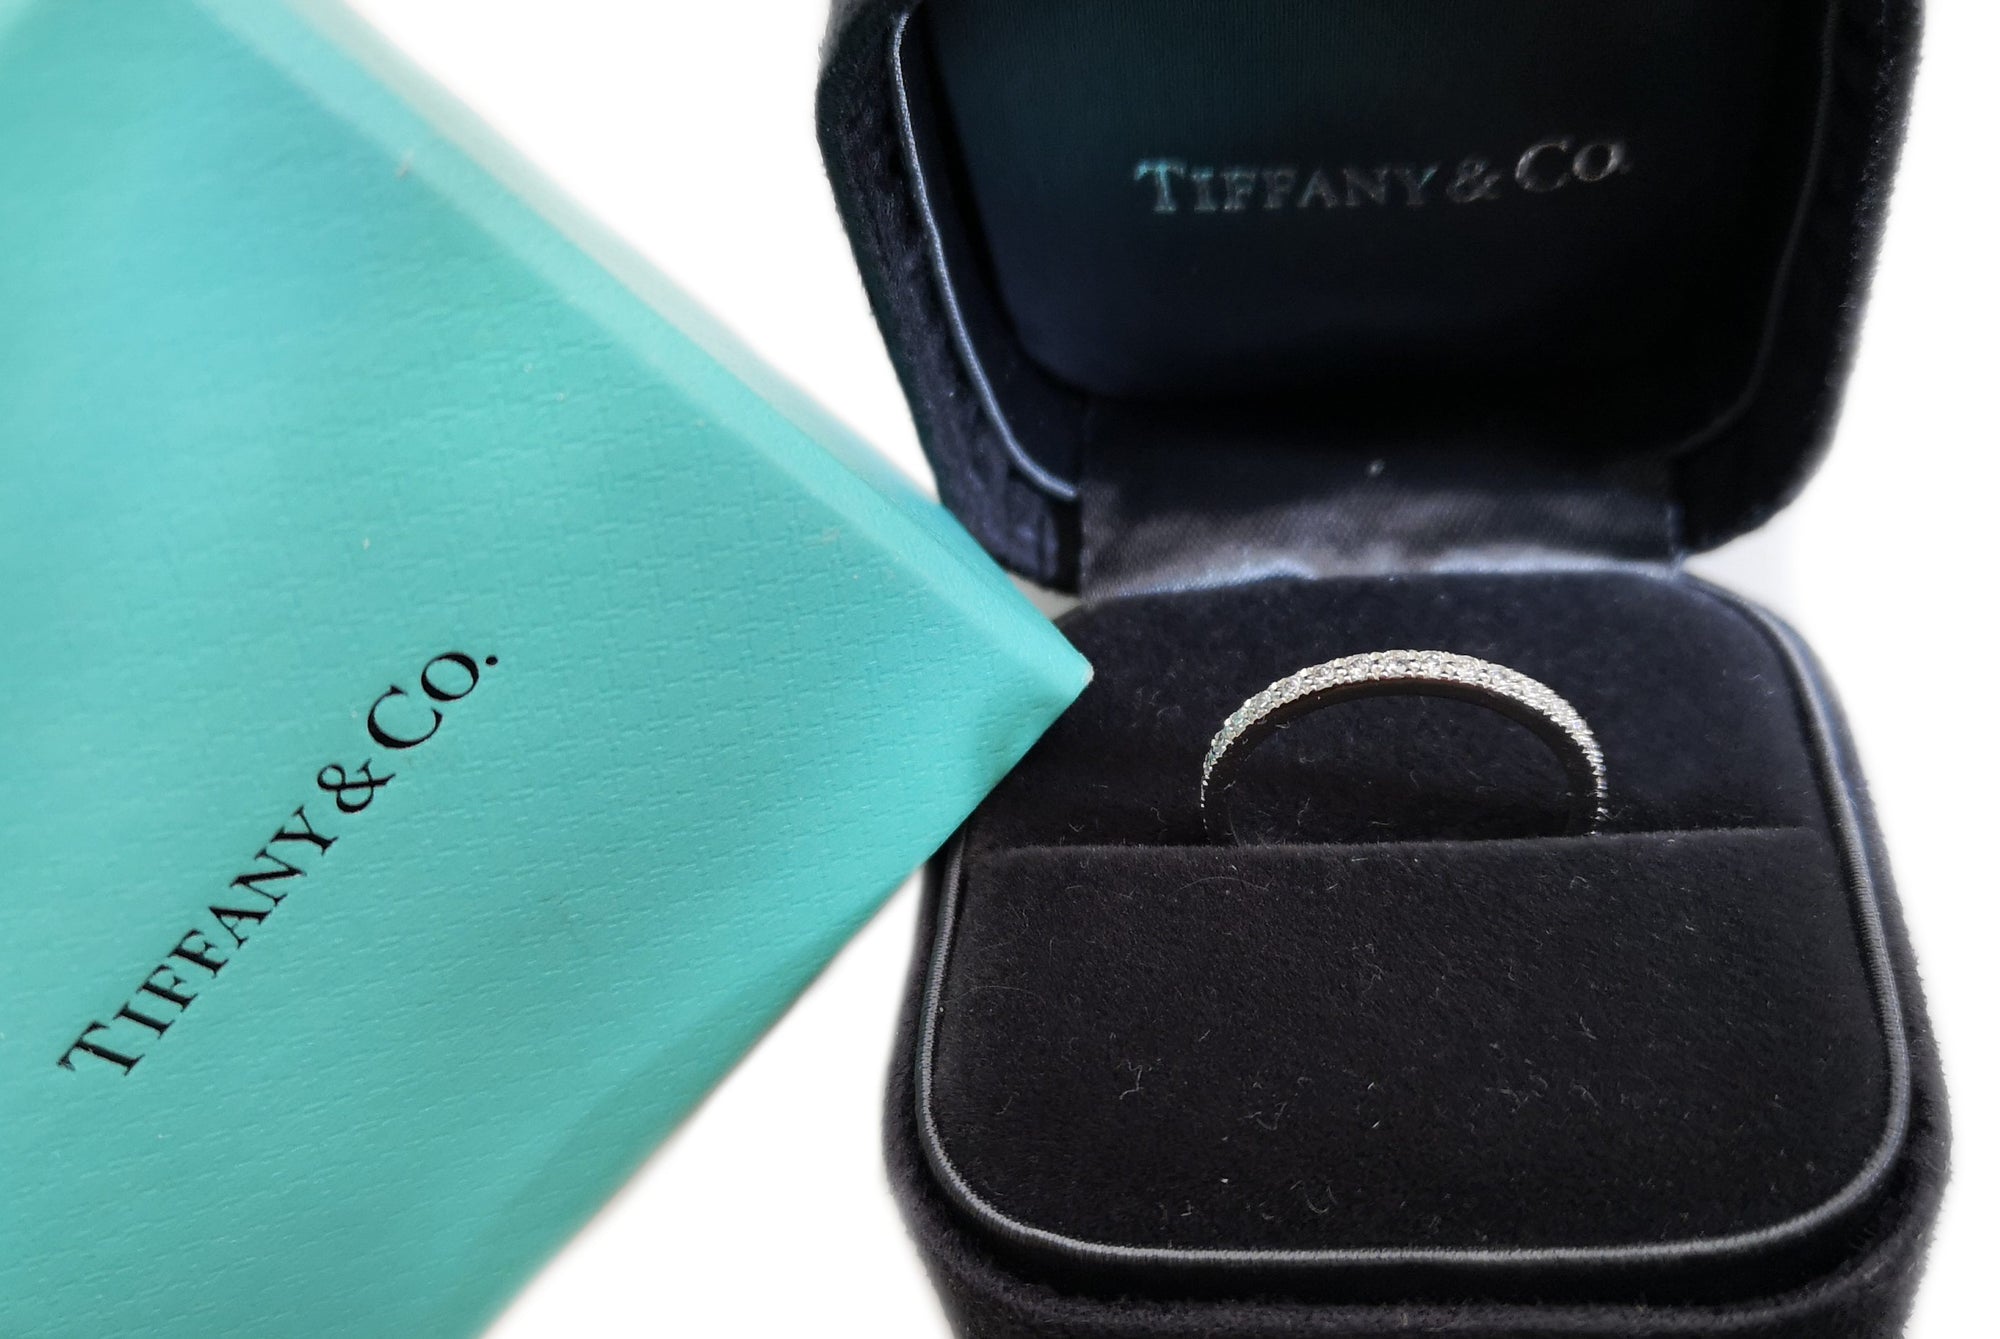 Tiffany & Co. Full Circle Novo 0.36ct Diamond Wedding Ring, Size L